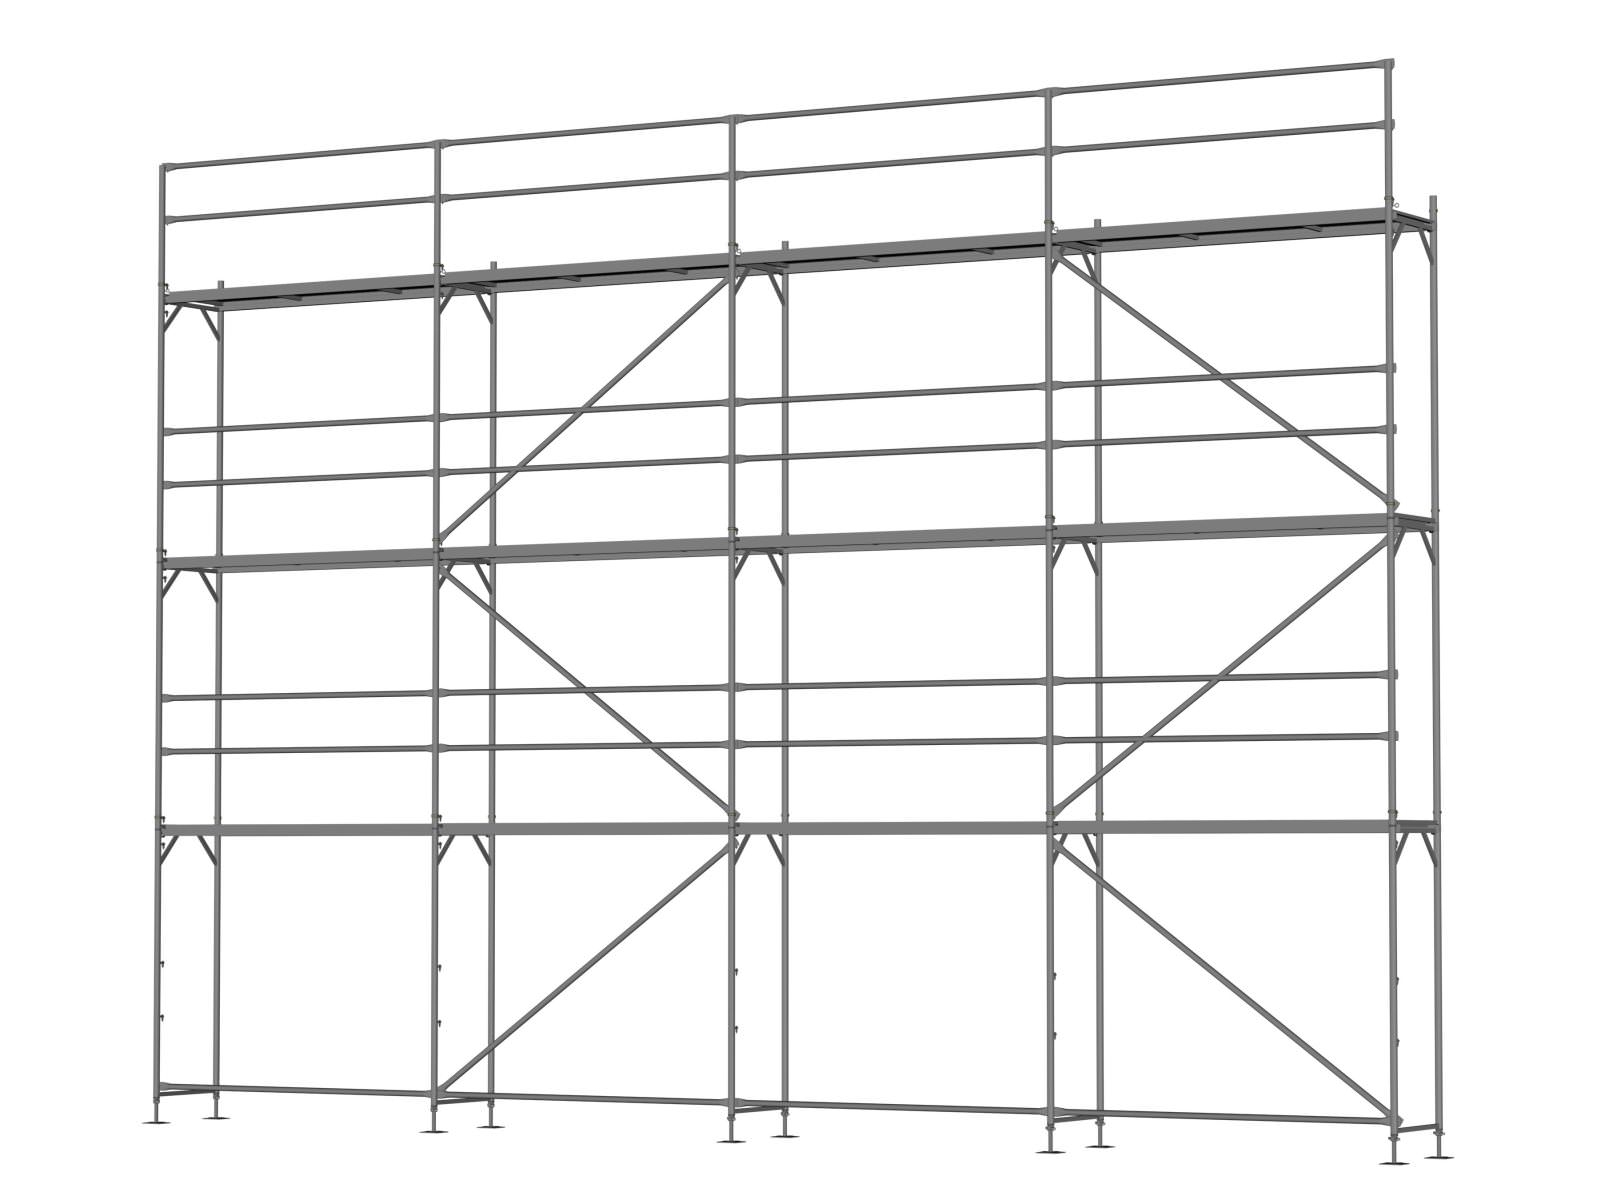 Alu Traufseitengerüst 80 qm - 2,5 m Felder - 10 m lang - 8 m Arbeitshöhe - Basis-Gerüst